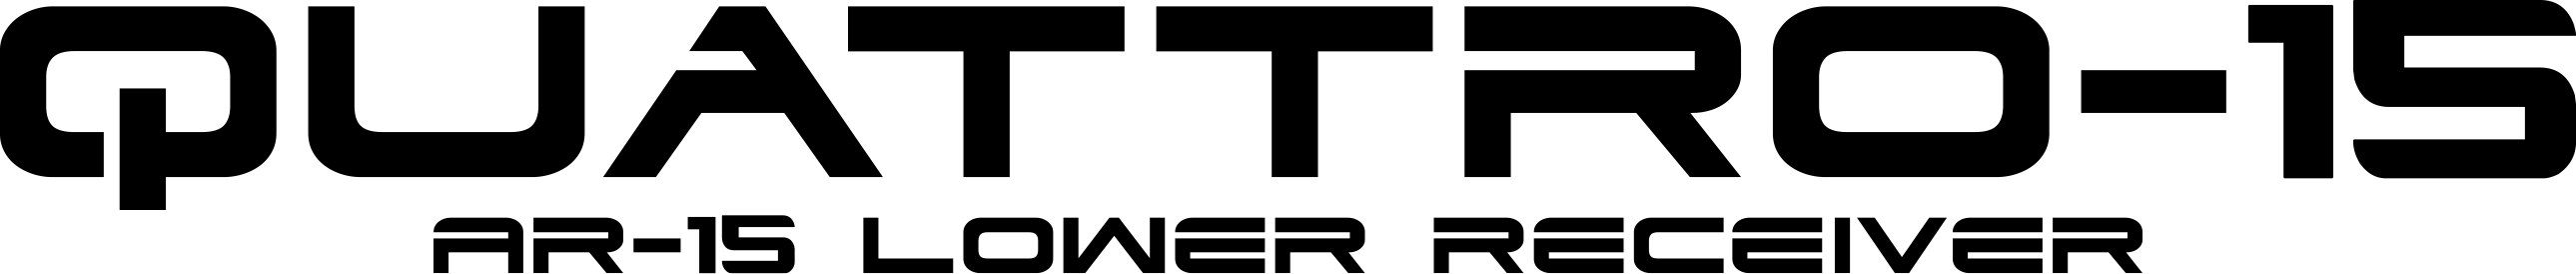 Quattro-15 Logo